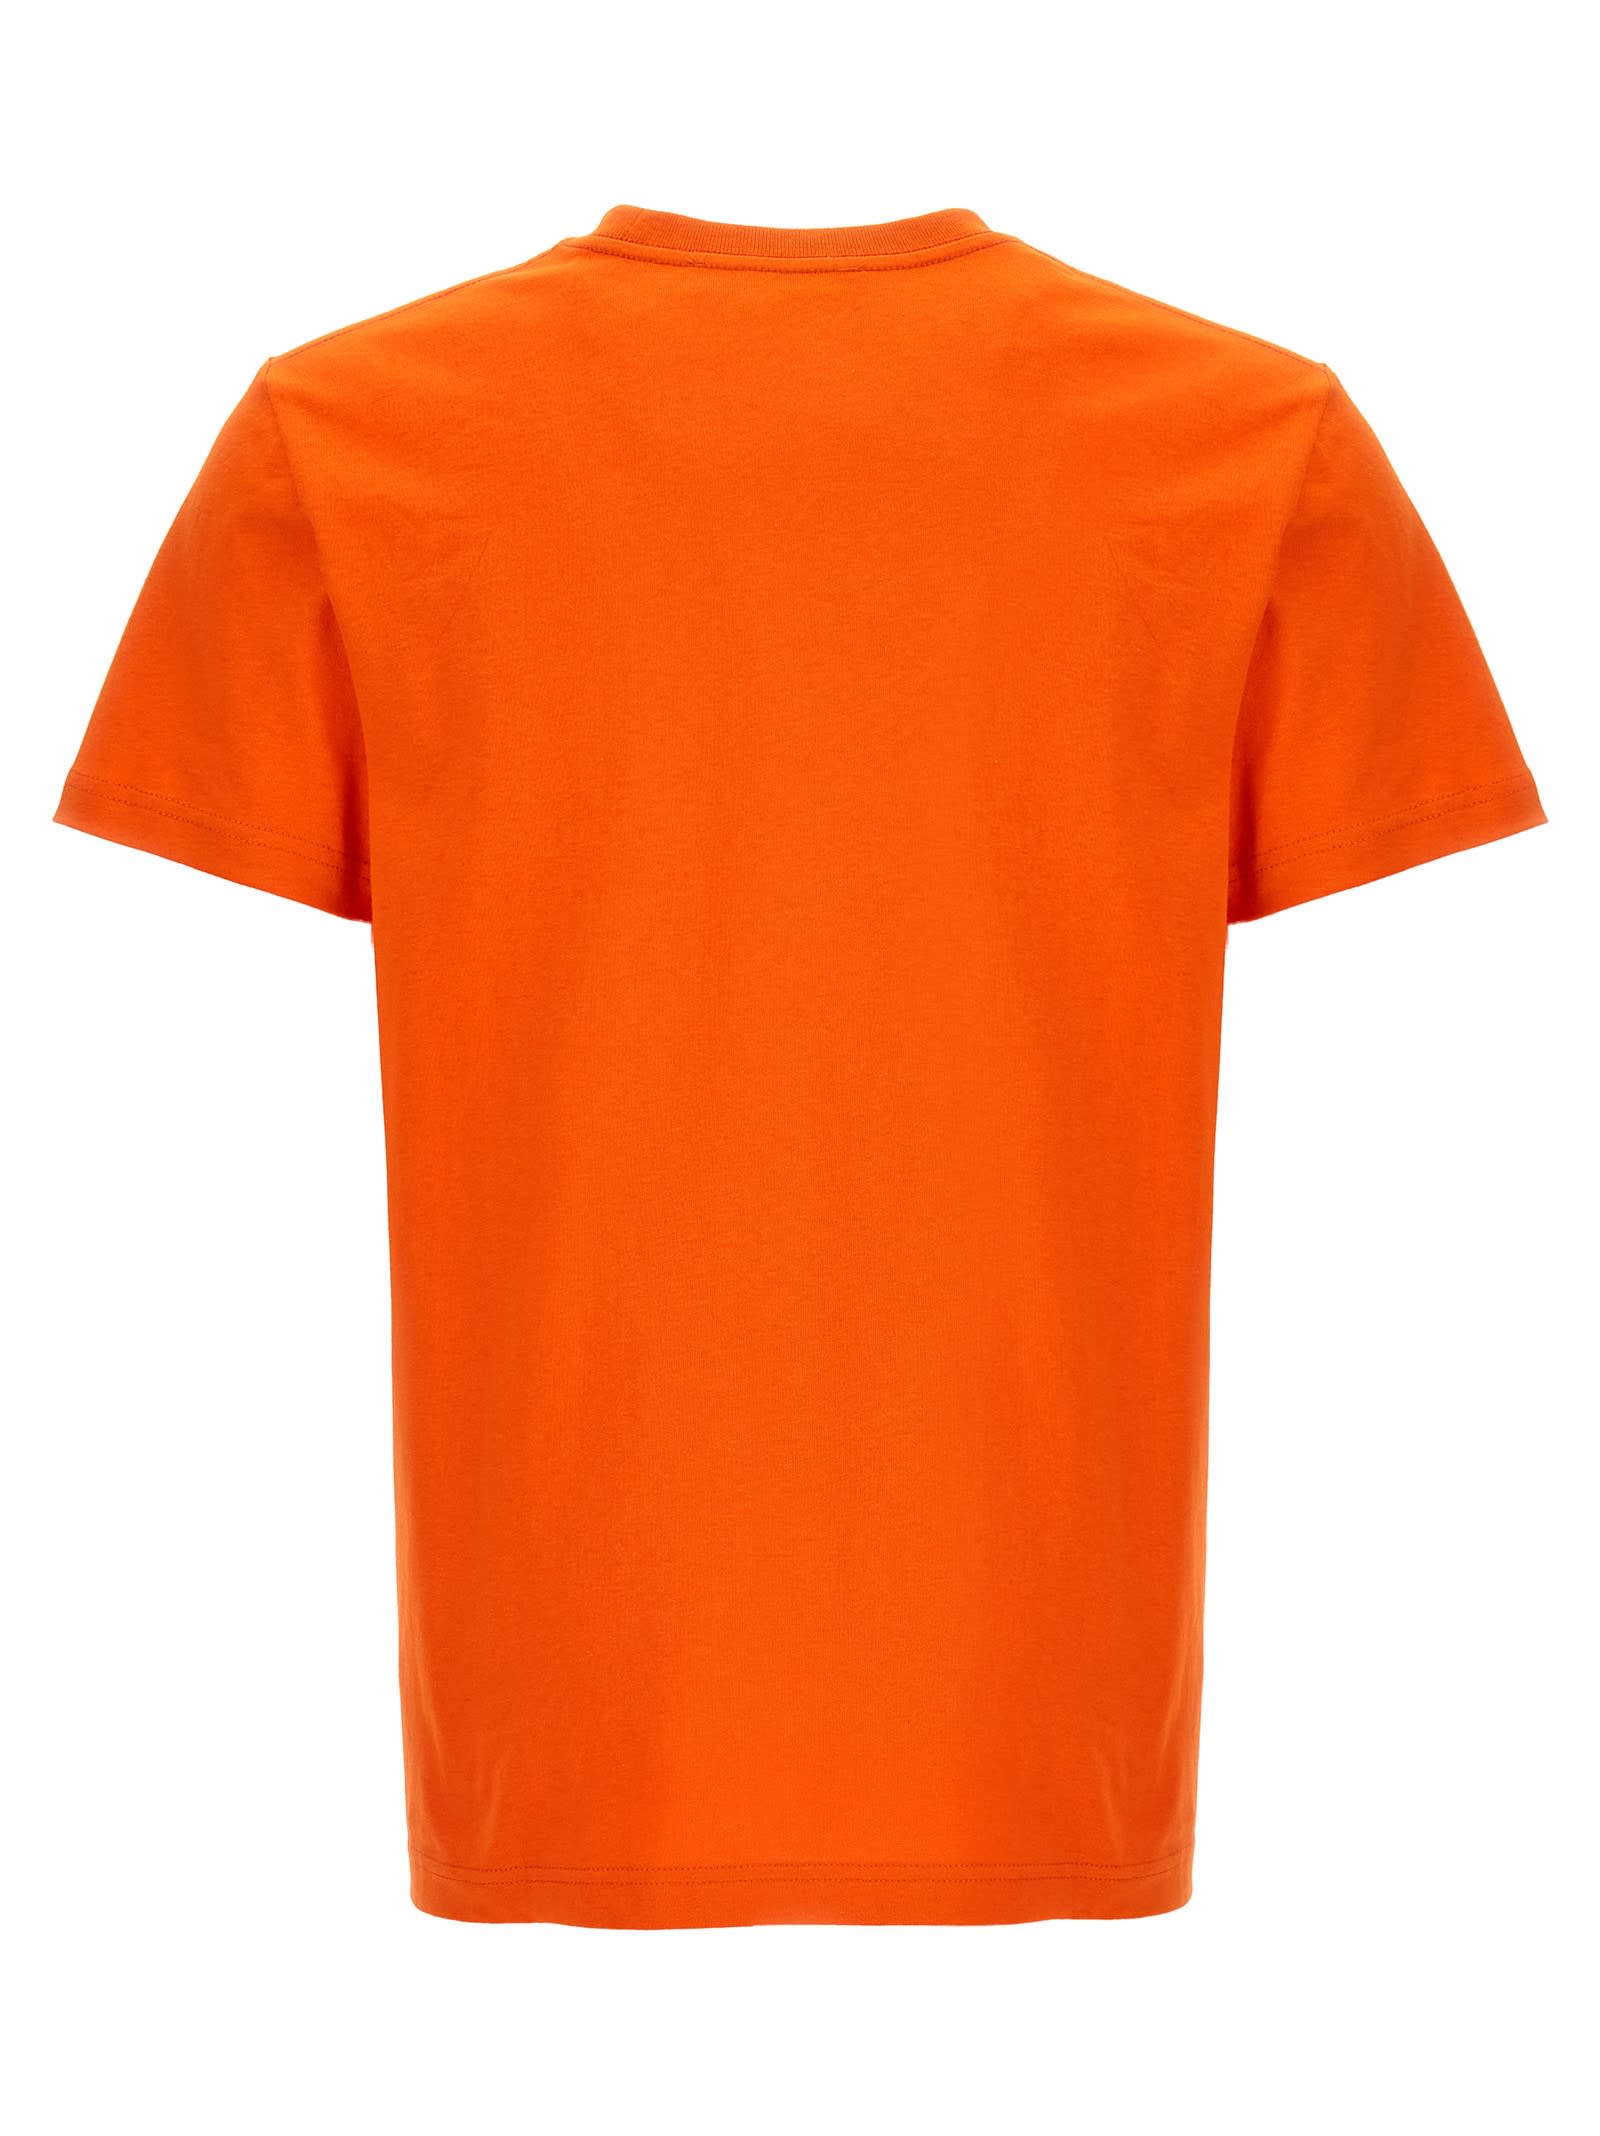 Shop Apc T-shirt A.p.c. X Jw Anderson In Orange